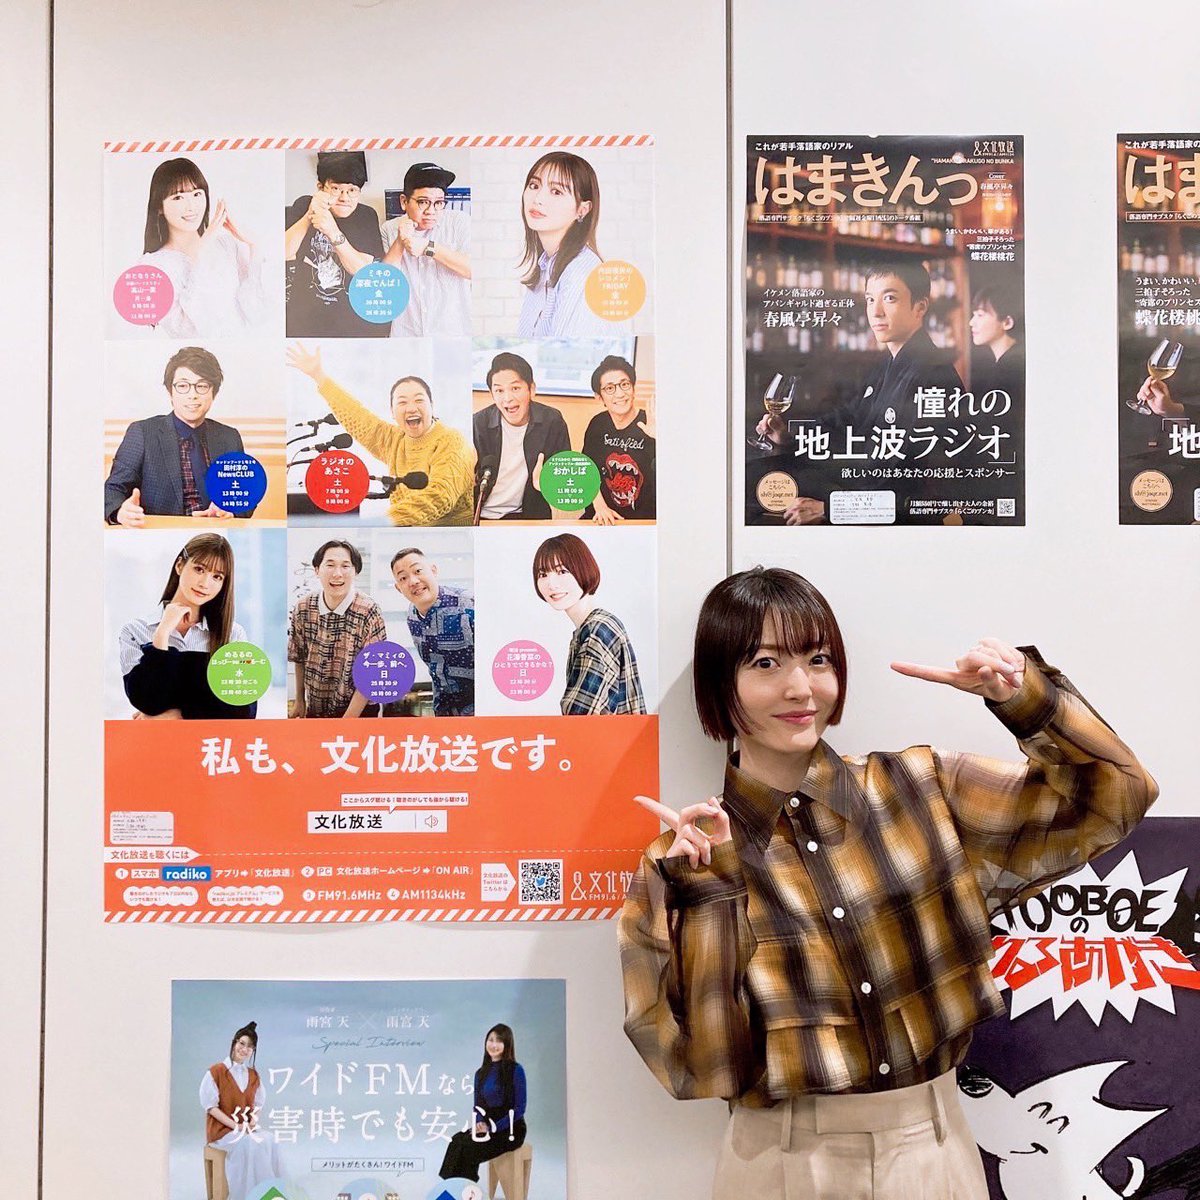 この後22時30分からは、『明治 presents 花澤香菜のひとりでできるかな？』 #hitokana です☺️🌸
文化放送のポスターに載っててテンション上がりました🥸✨
今日はふつおた回ですっ！！聴いてね✨